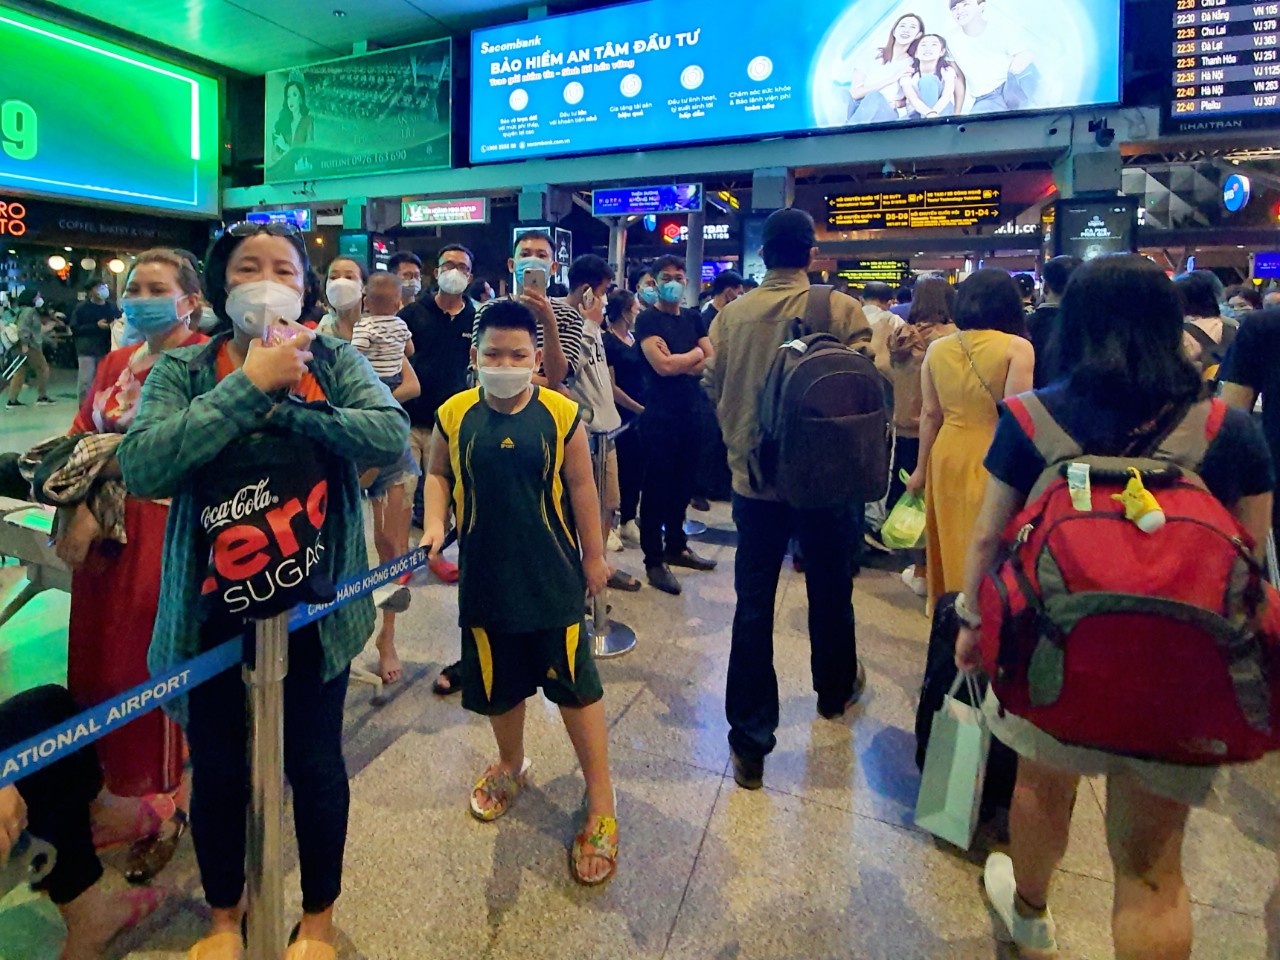 Sân bay Tân Sơn Nhất khuyến cáo hành khách chủ động đặt xe để tránh chờ lâu - Ảnh 2.